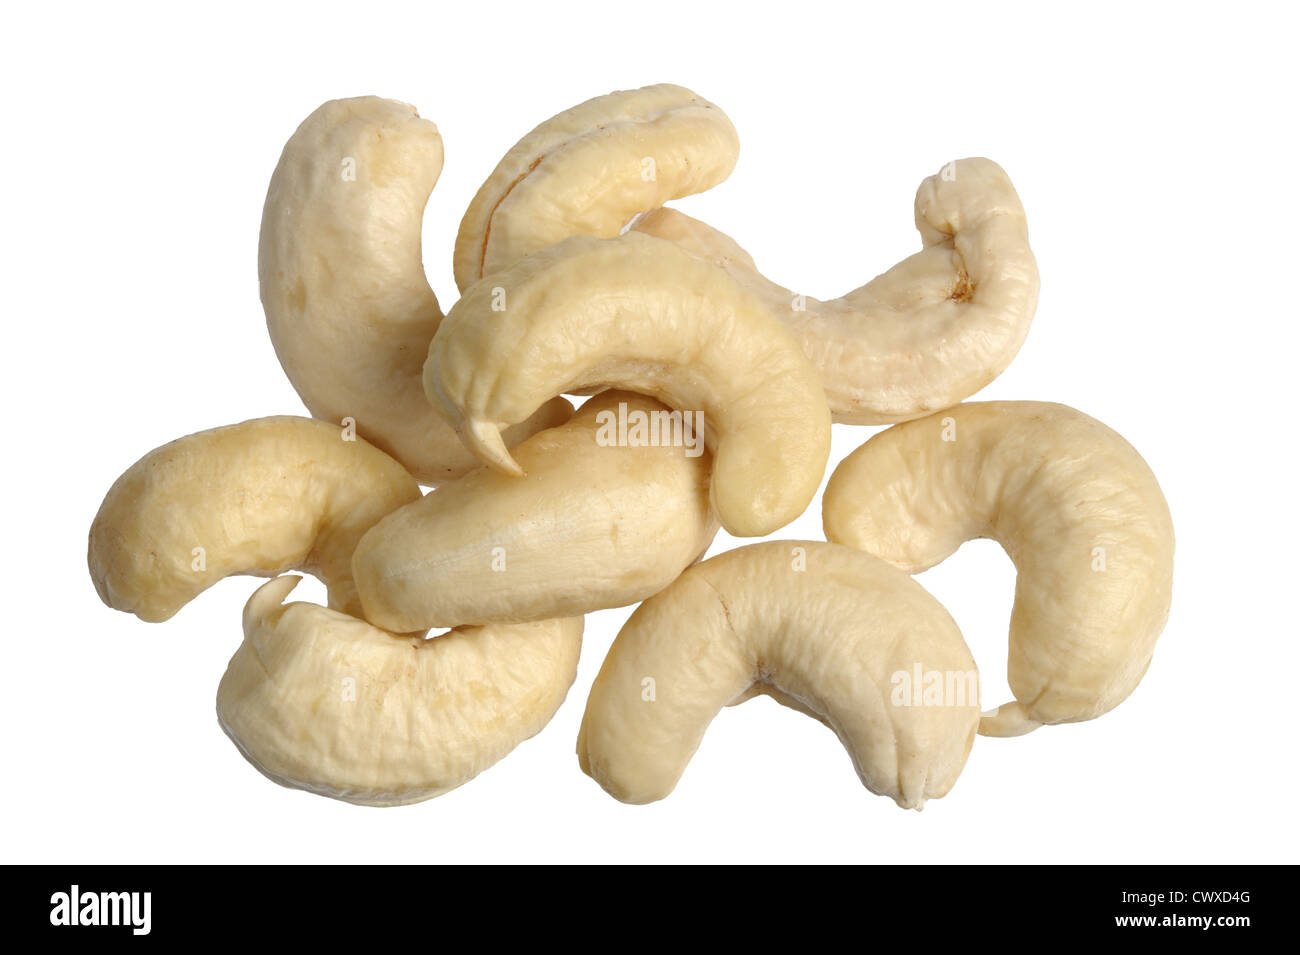 Die natürliche Maserung - Nahaufnahme von Cashew-Nüssen. Stockfoto